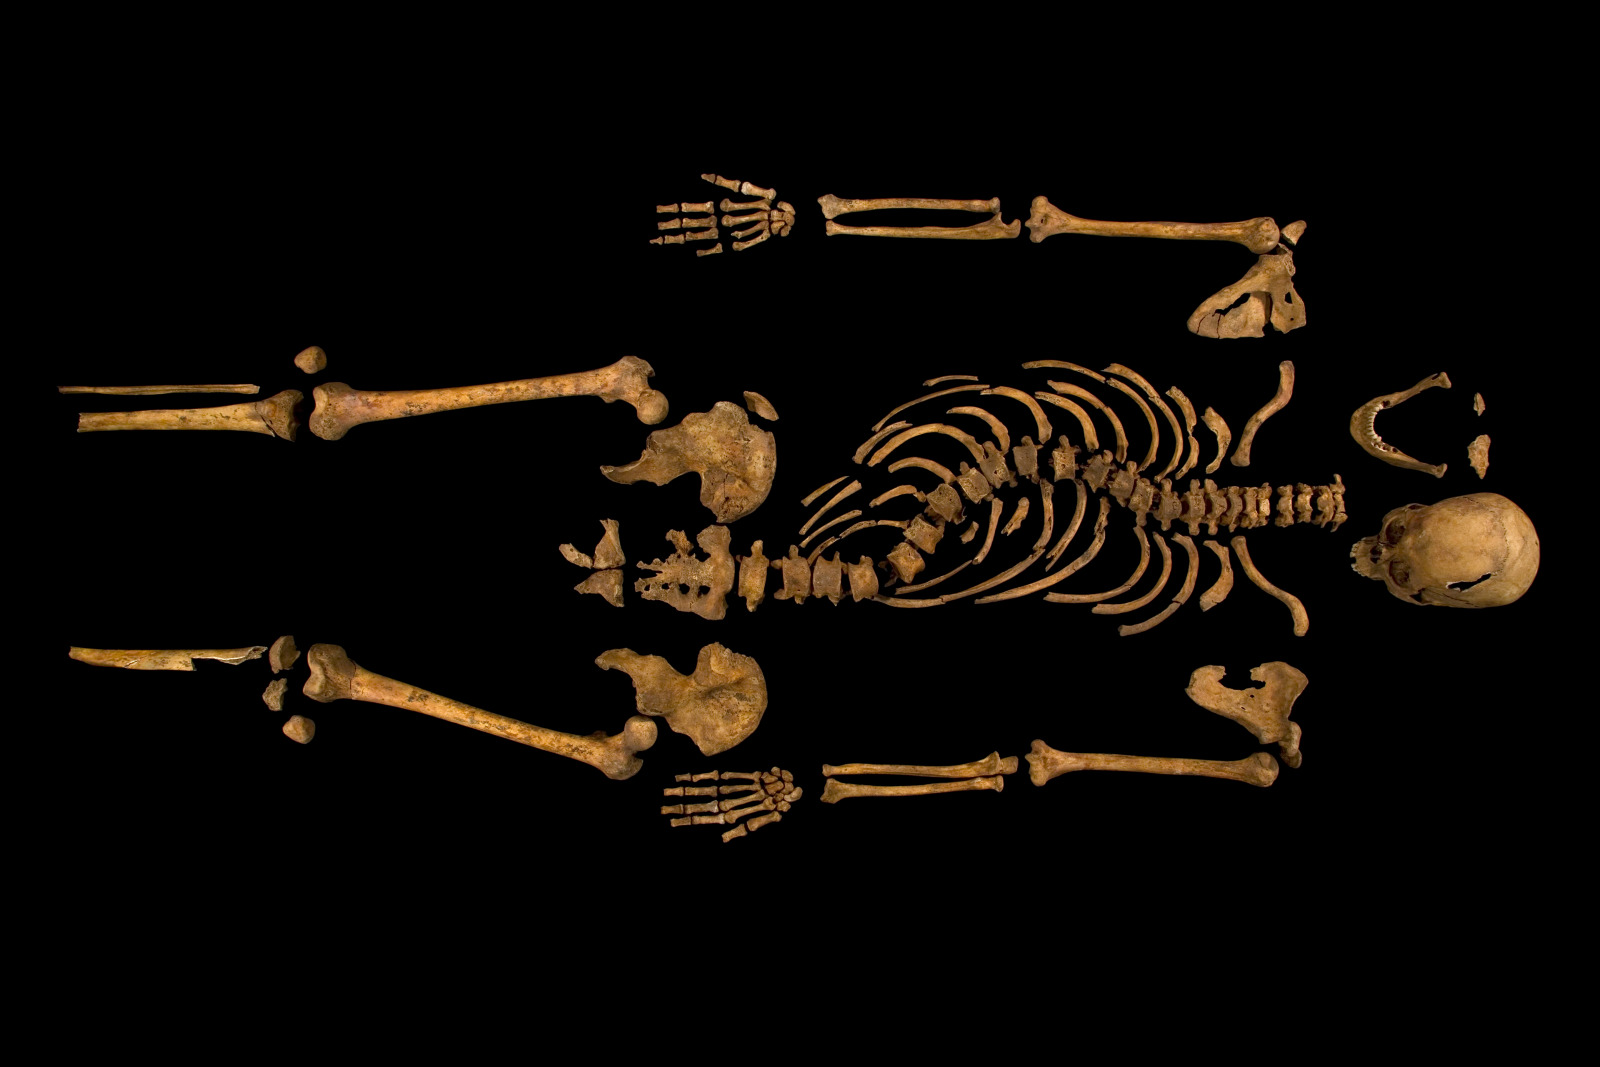 The Skeleton of King Richard III